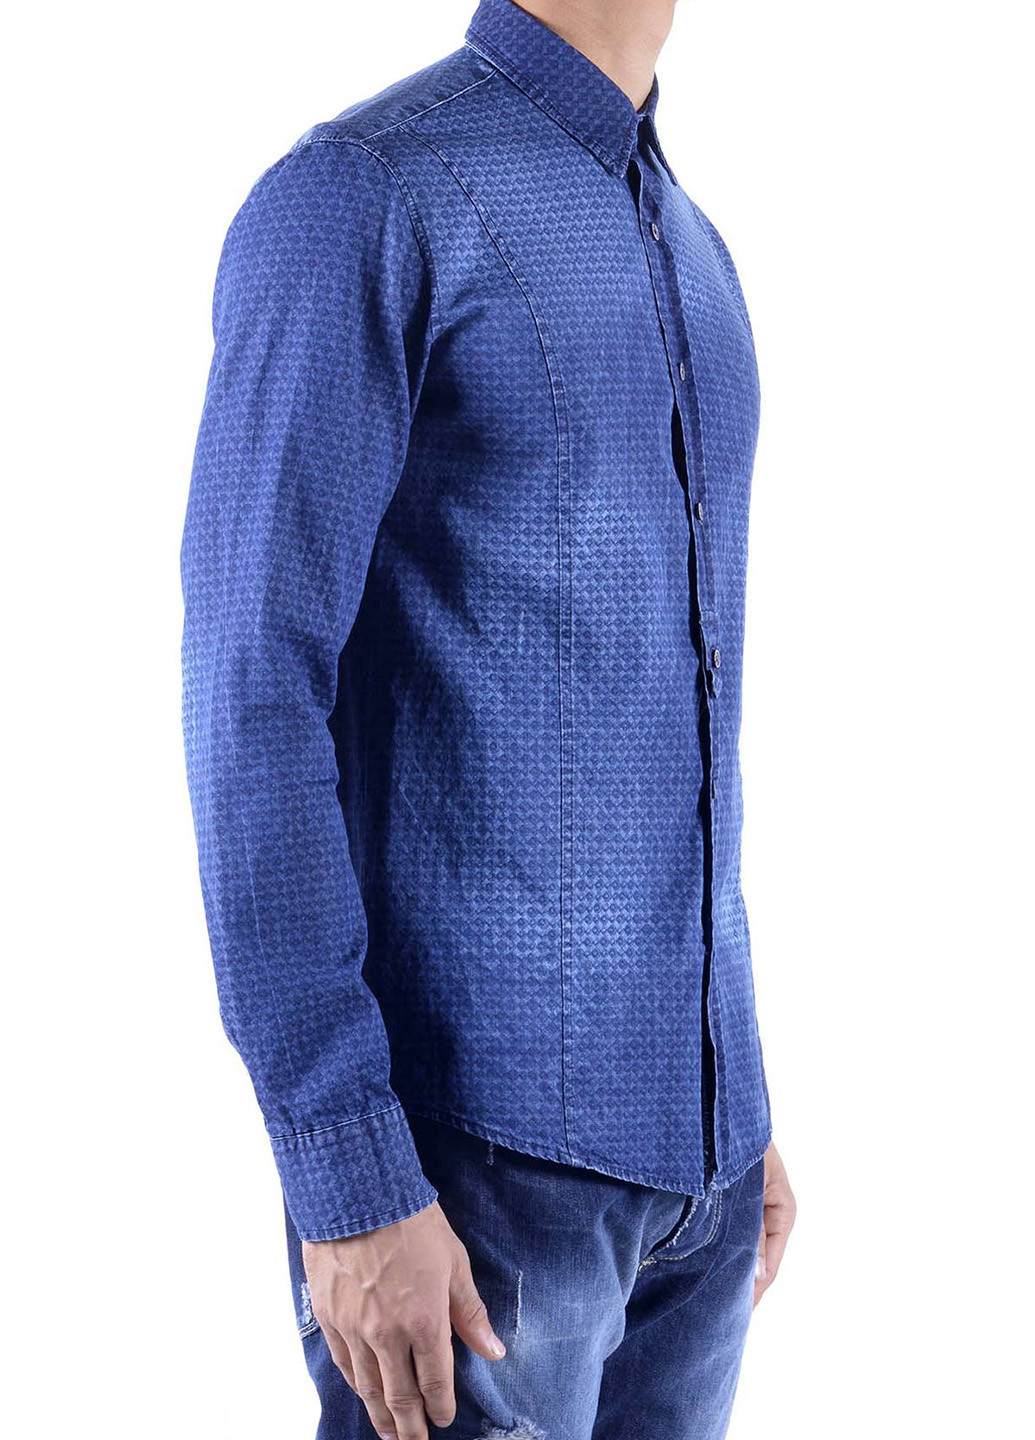 Синяя джинсовая рубашка с орнаментом Made in Italy